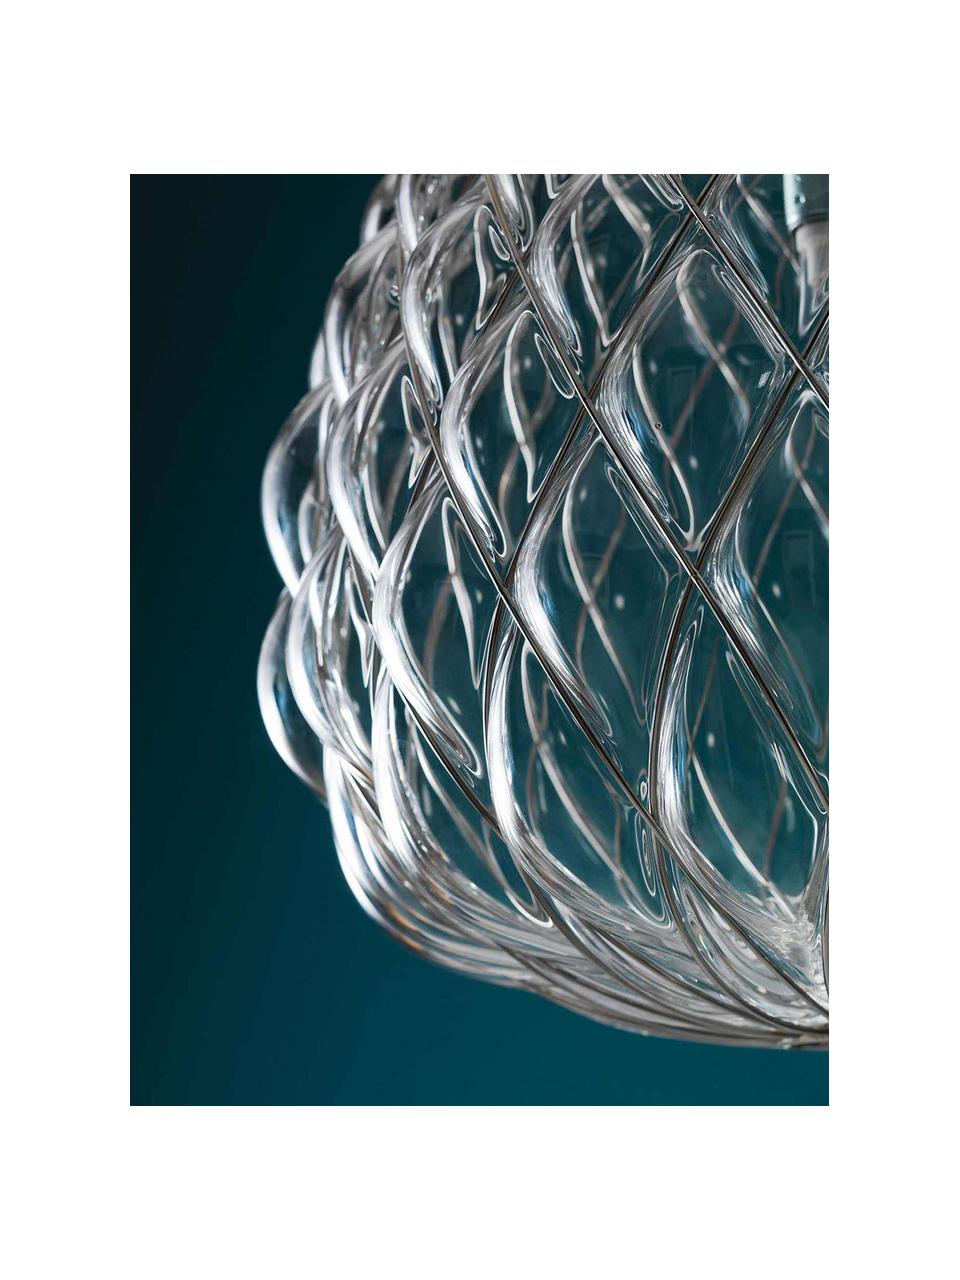 Ręcznie wykonana lampa wisząca Pinecone, Transparentny, odcienie srebrnego, Ø 50 x W 52 cm